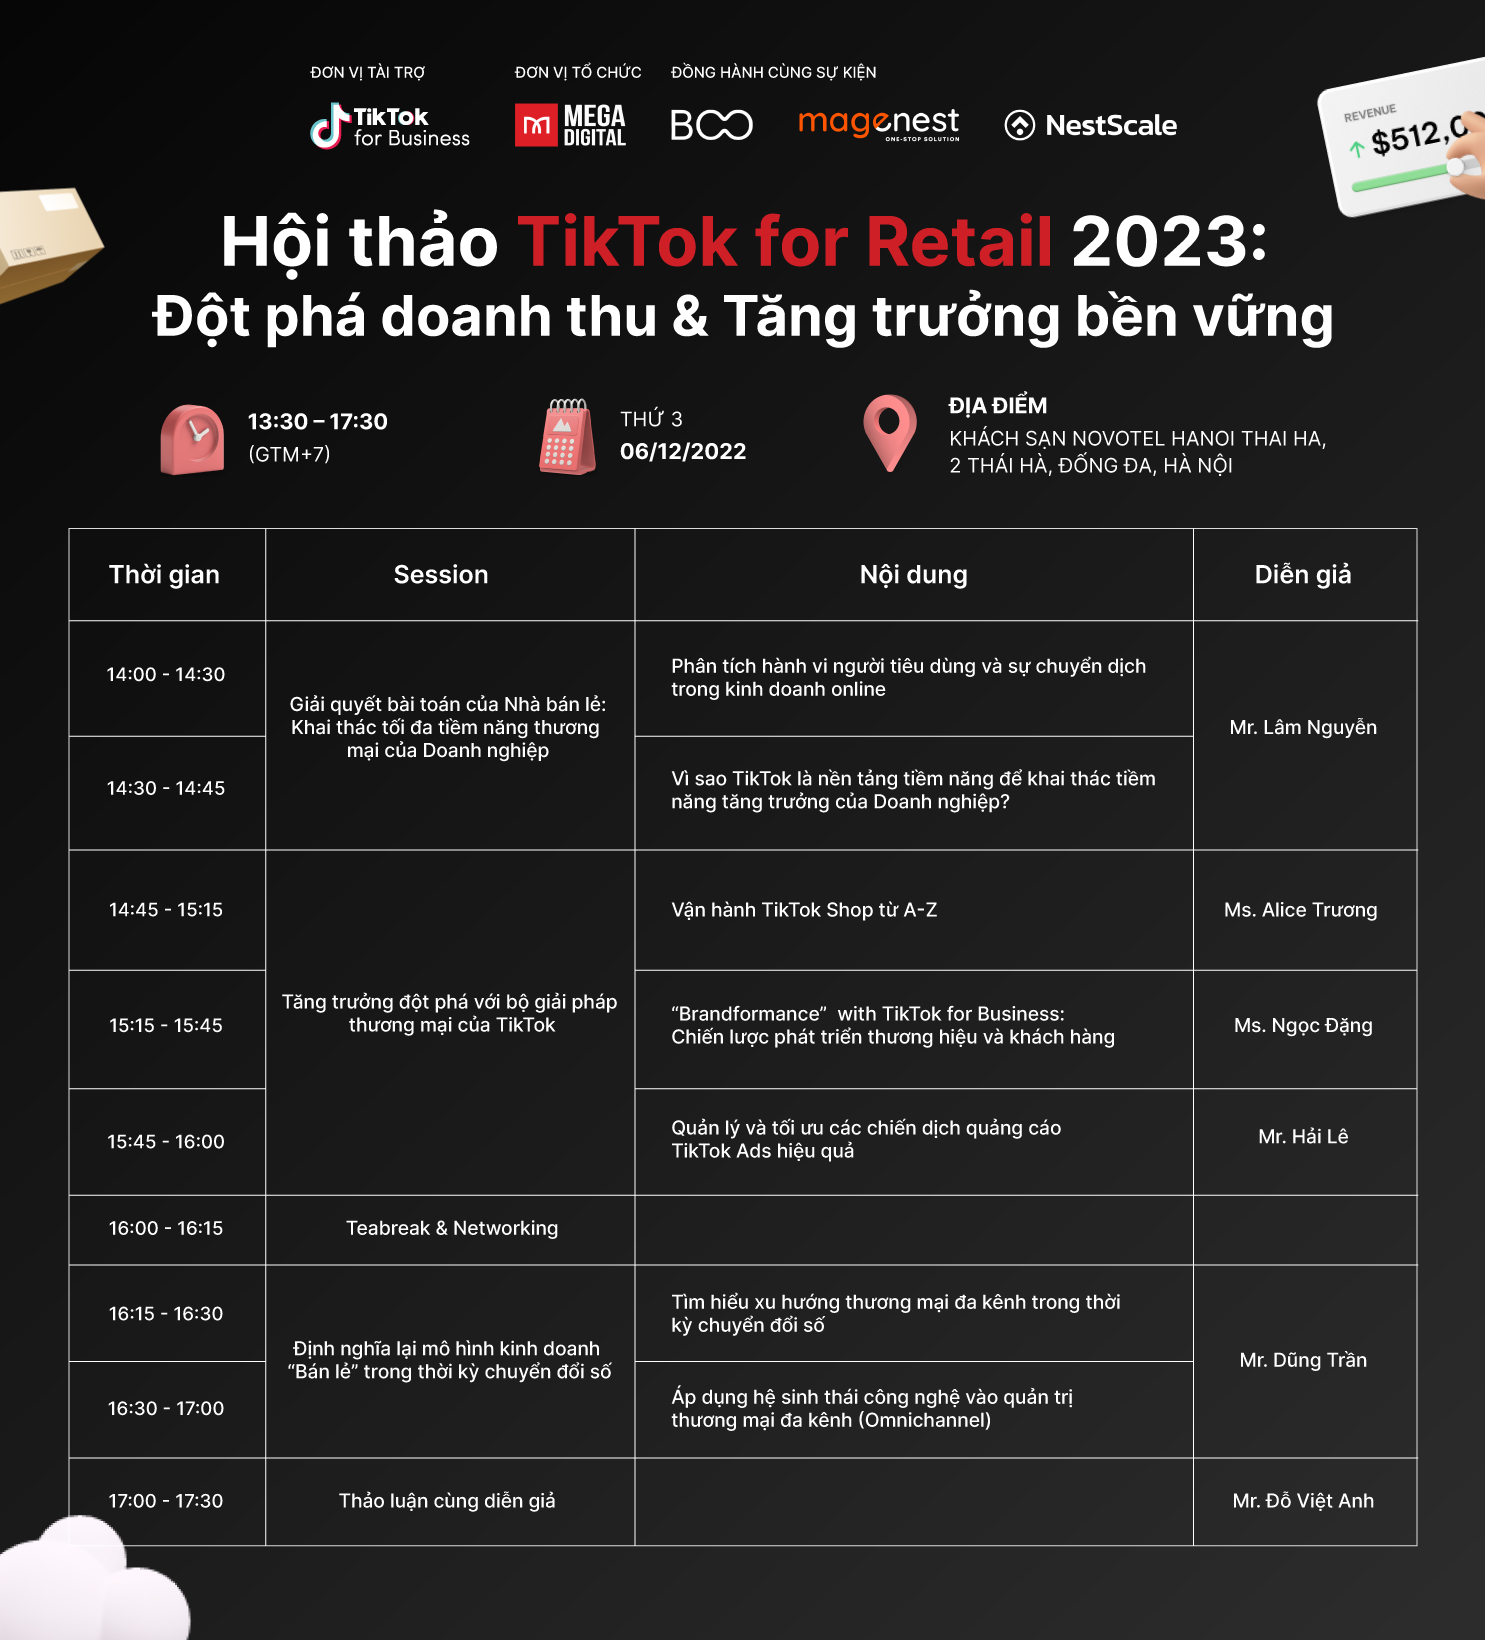 Lịch trình sự kiện TikTok for Retail 2023